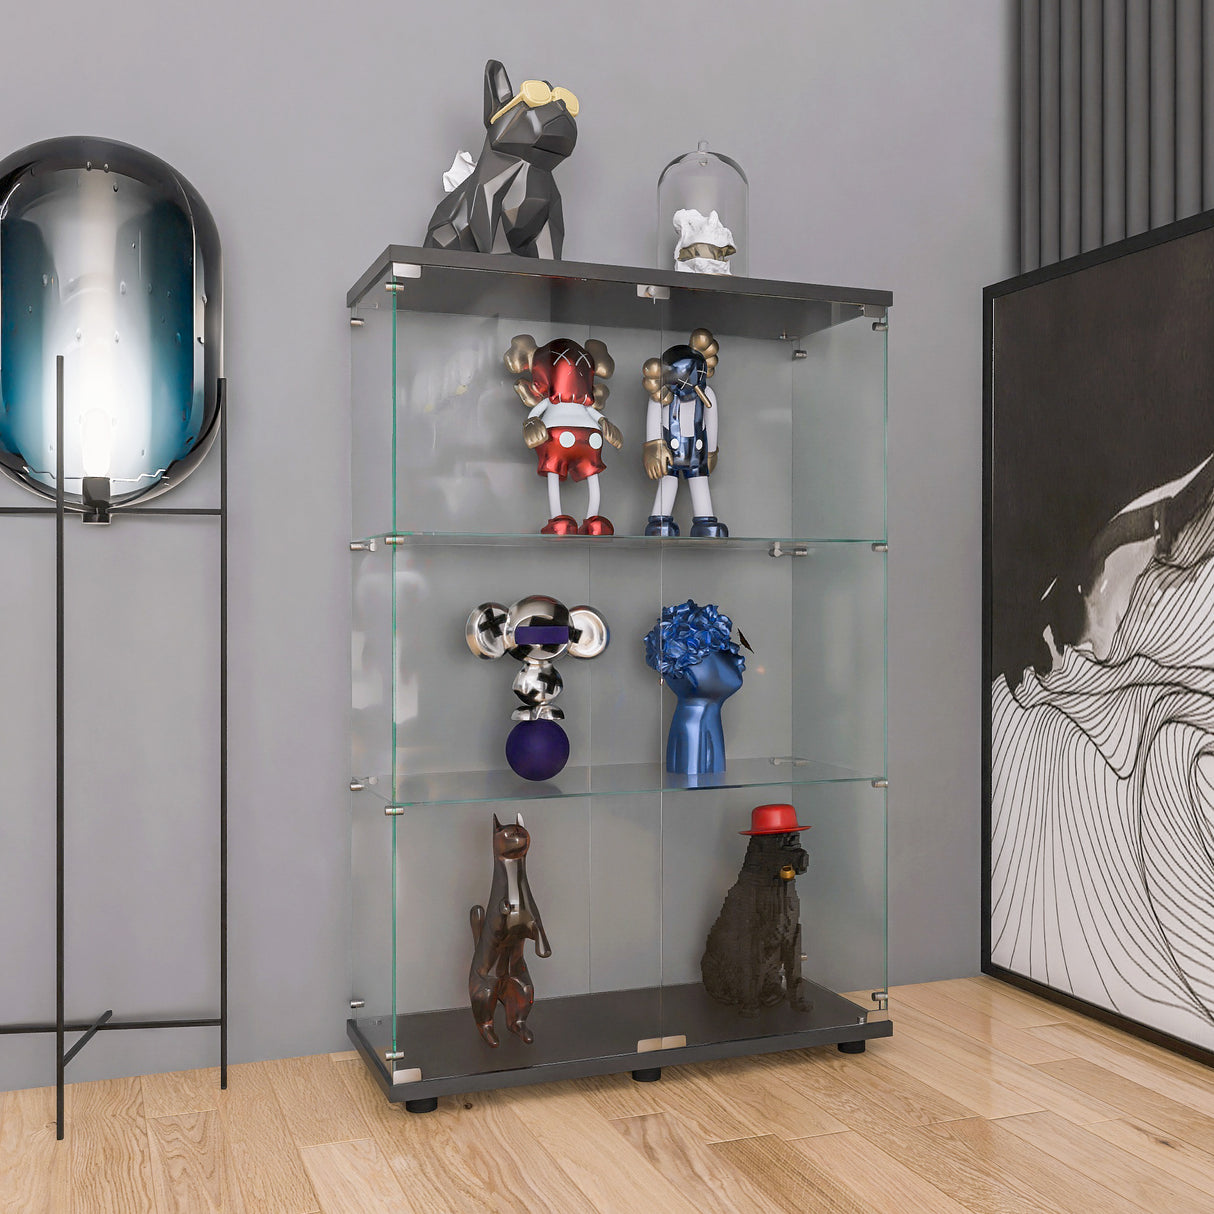 Two-door Glass Display Cabinet 3 Shelves with Door, Floor Standing Curio Bookshelf for Living Room Bedroom Office, 49.49” x 31.77”x 14.37”, Black Home Elegance USA